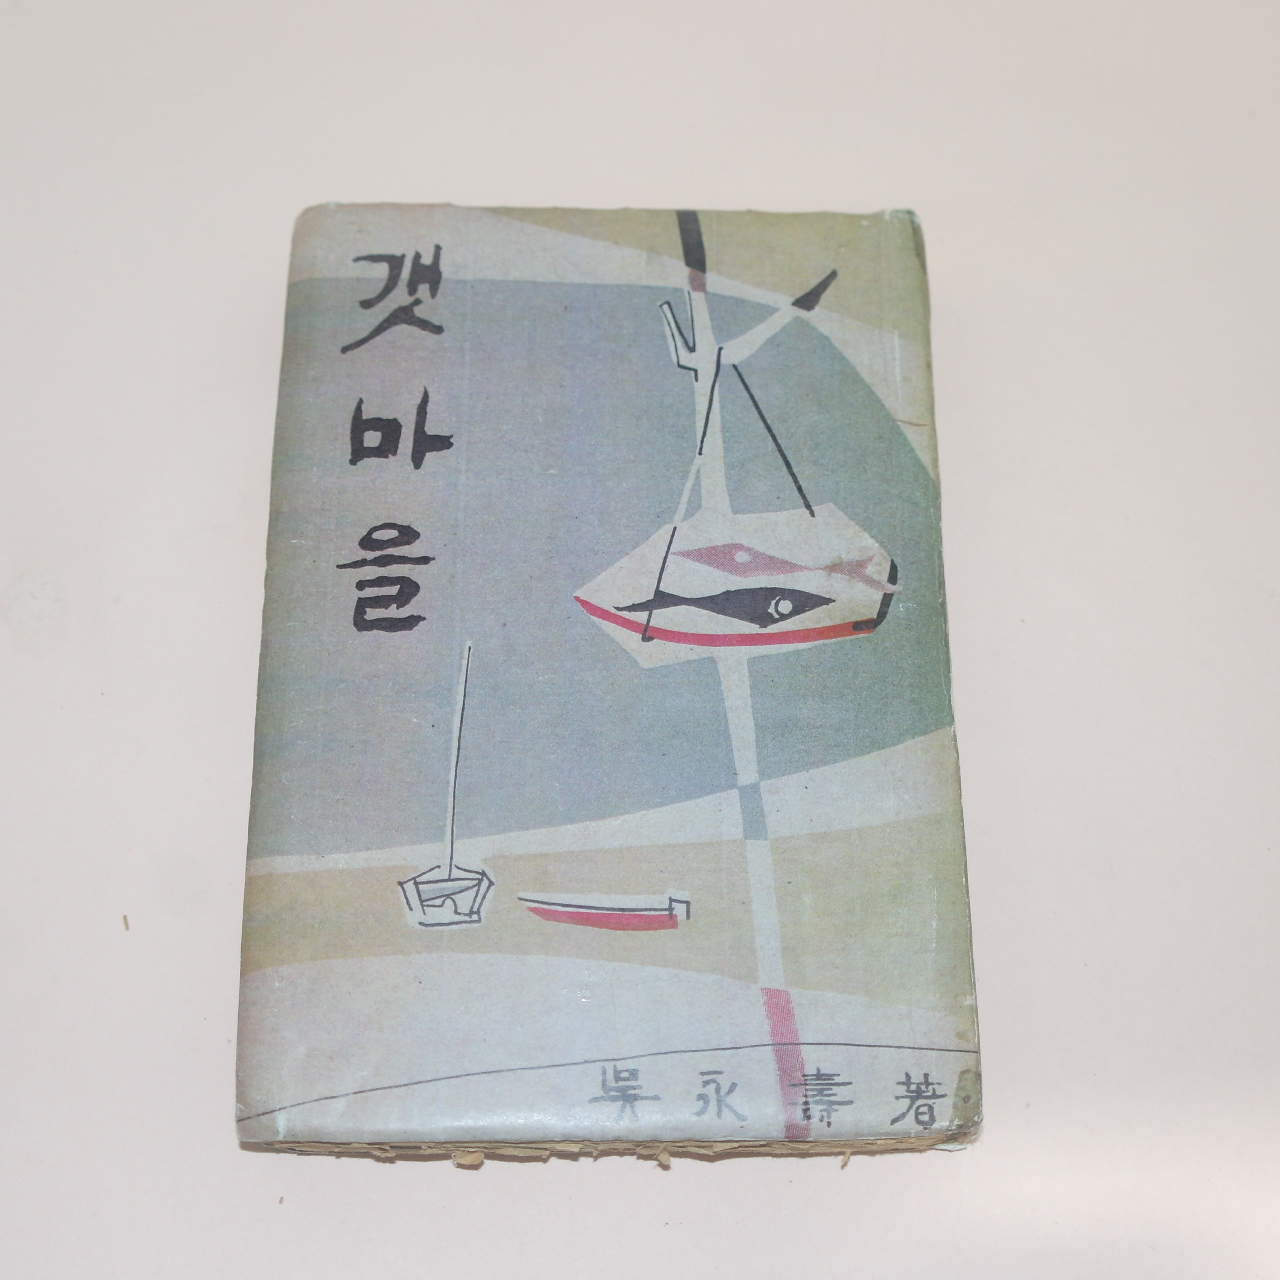 1957년재판 오영수(吳永壽) 갯마을